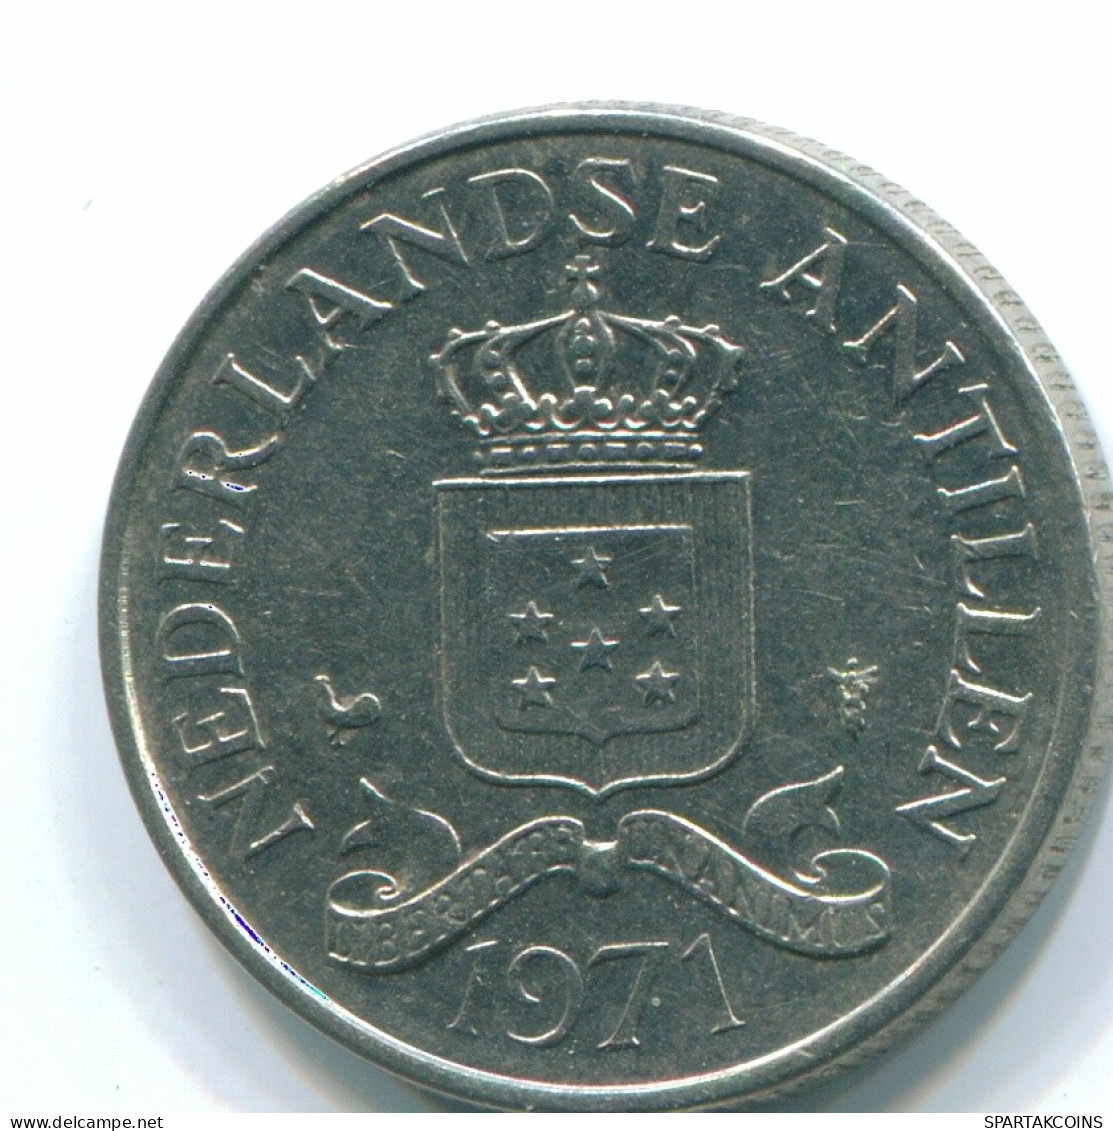 25 CENTS 1971 NETHERLANDS ANTILLES Nickel Colonial Coin #S11580.U.A - Antillas Neerlandesas